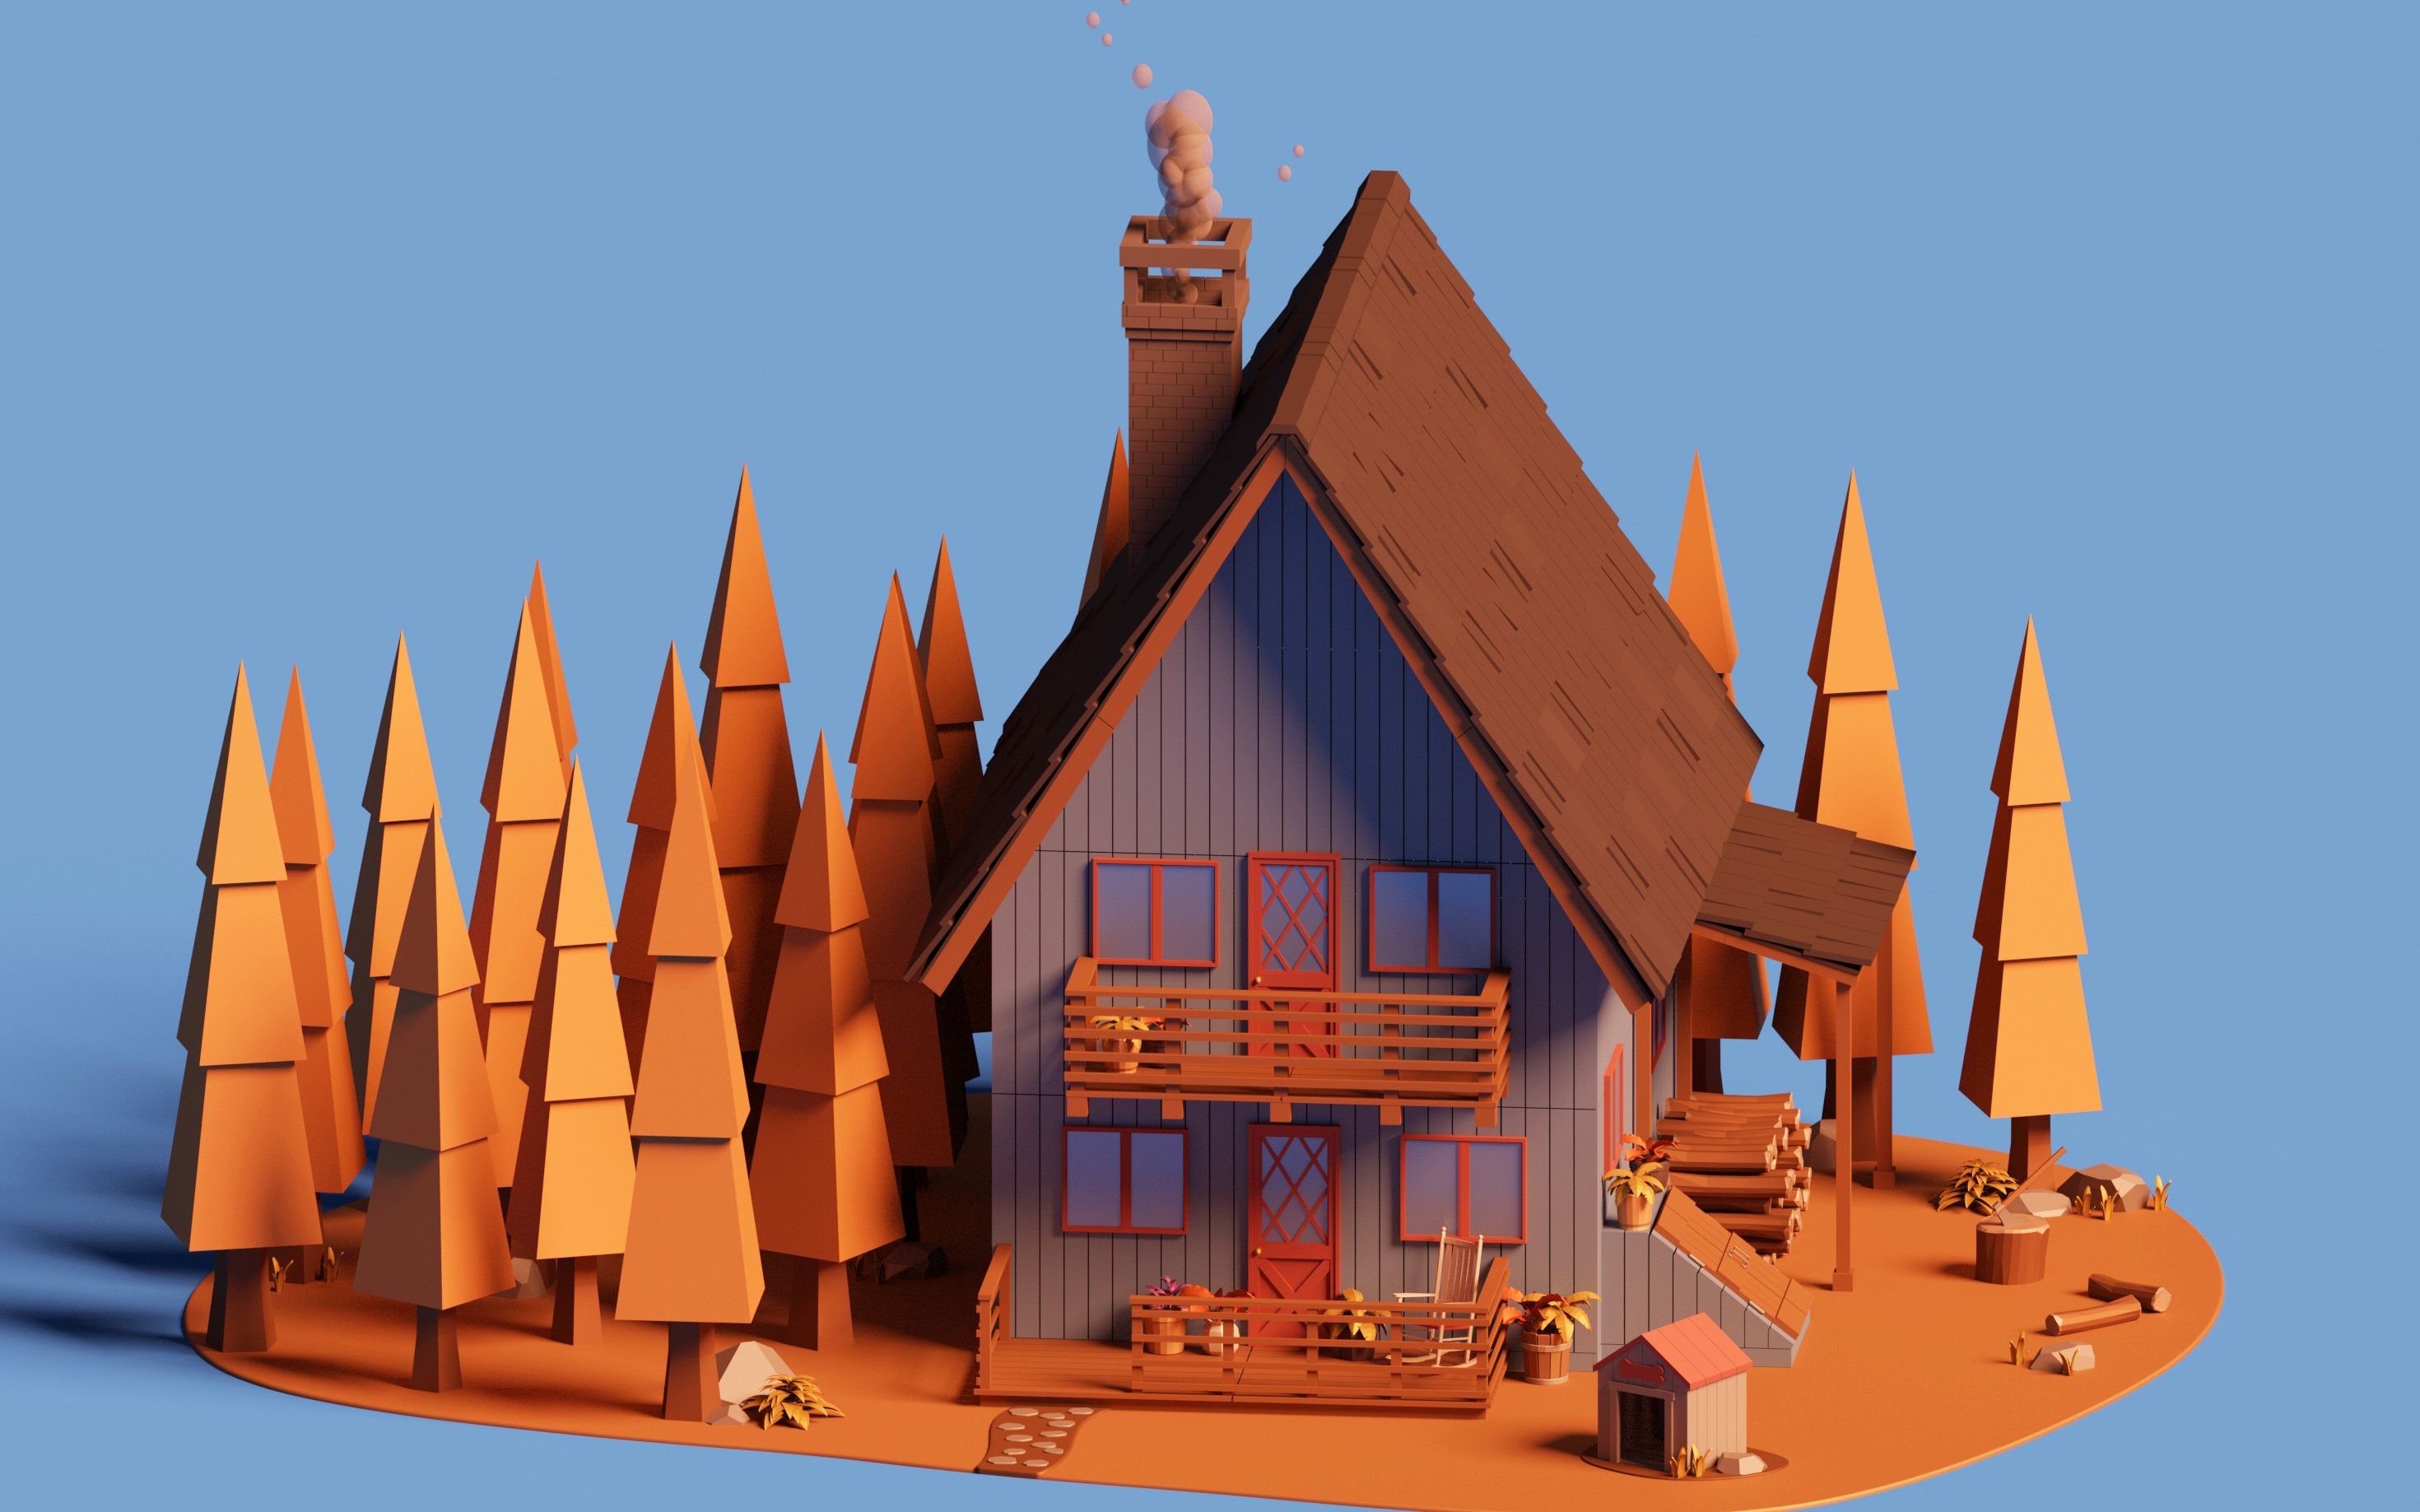 3dmax简单房子模型制作图片